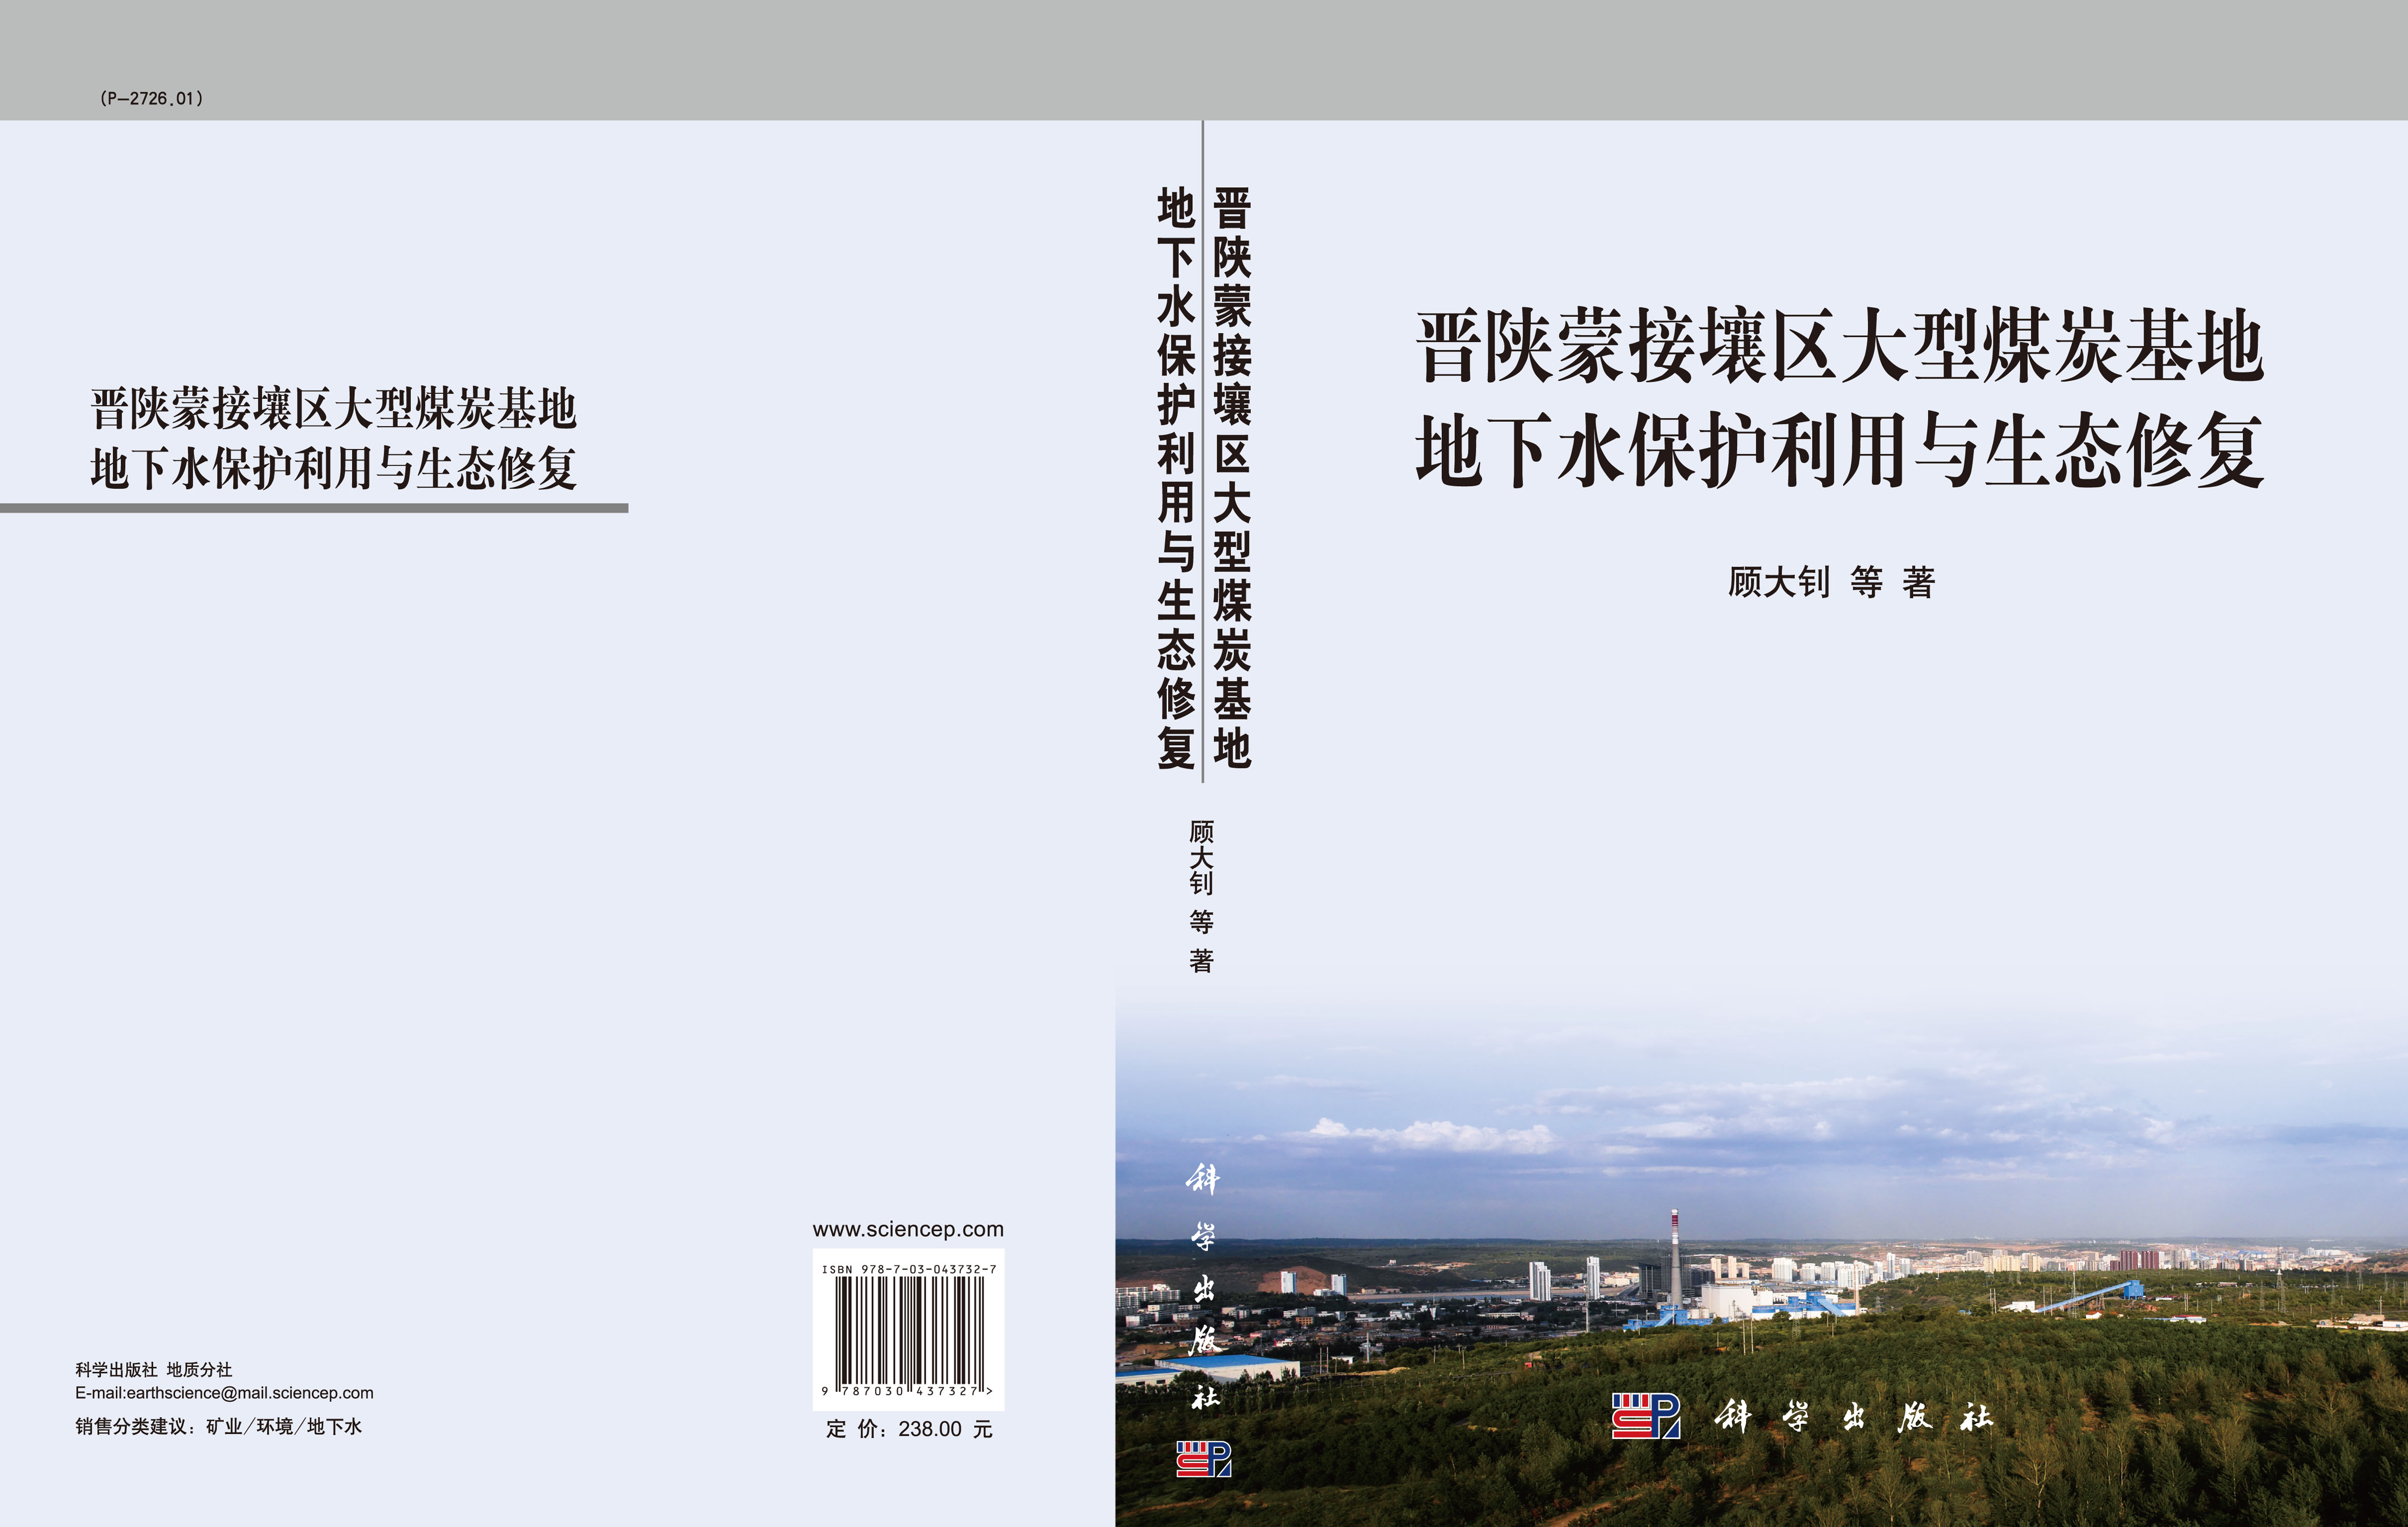 晋陕蒙接壤区大型煤炭基地地下水保护利用与生态修复